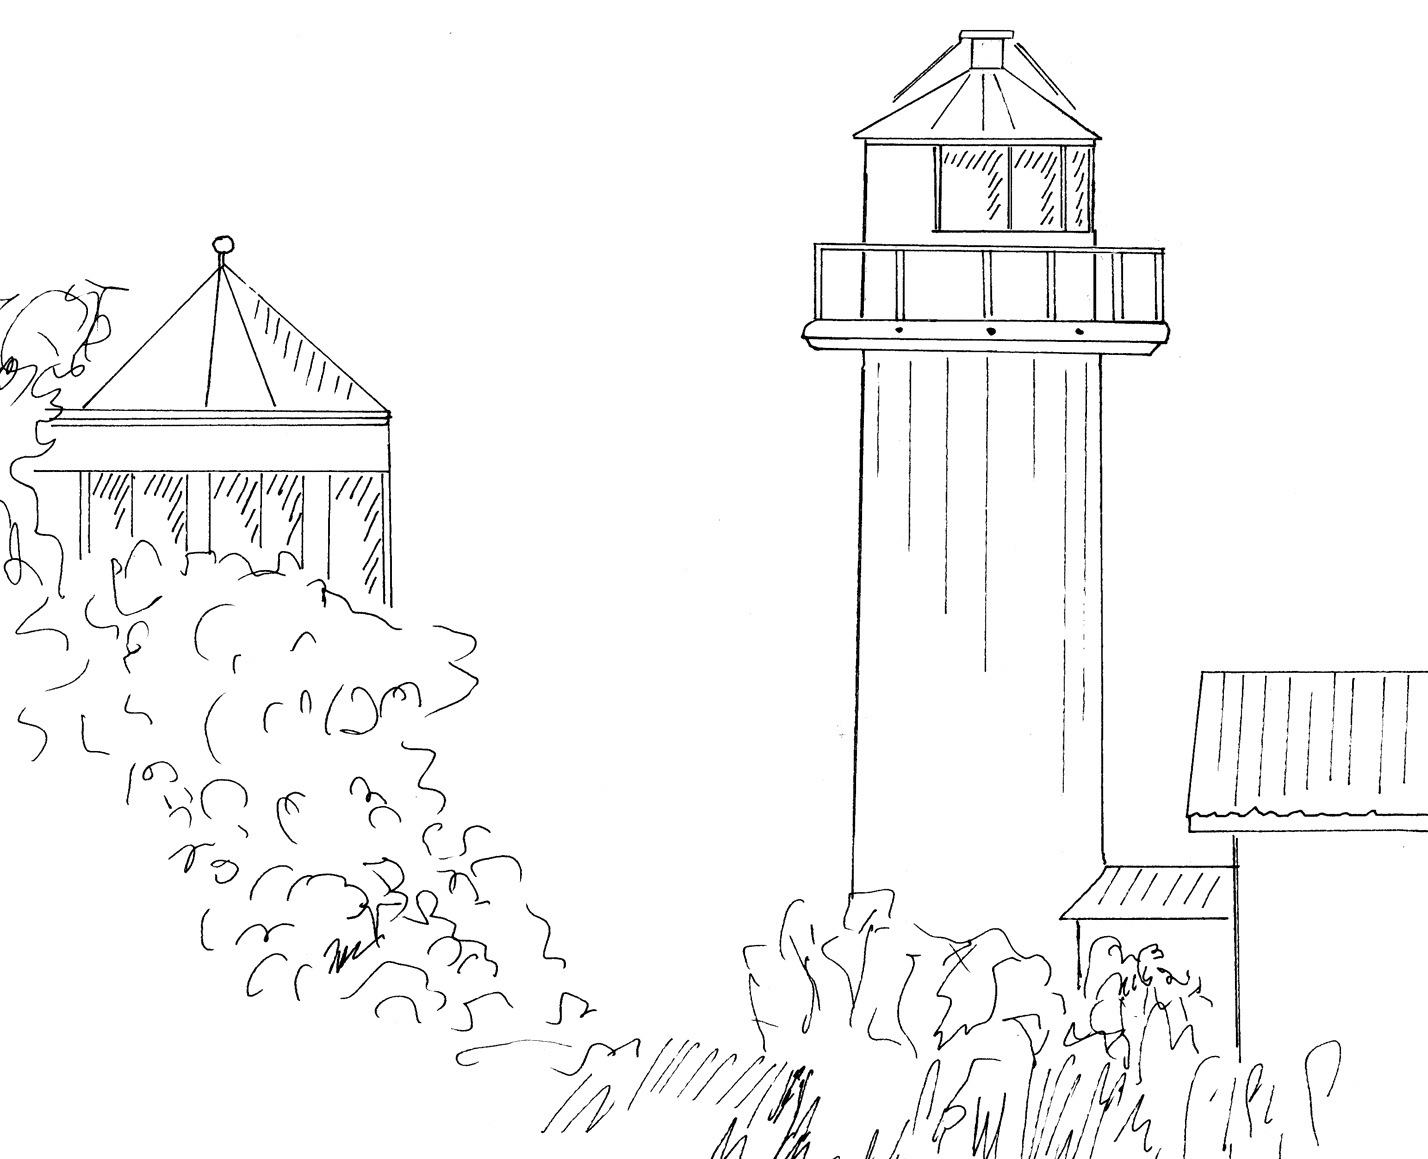 Haken - Lighthouse near Tuna